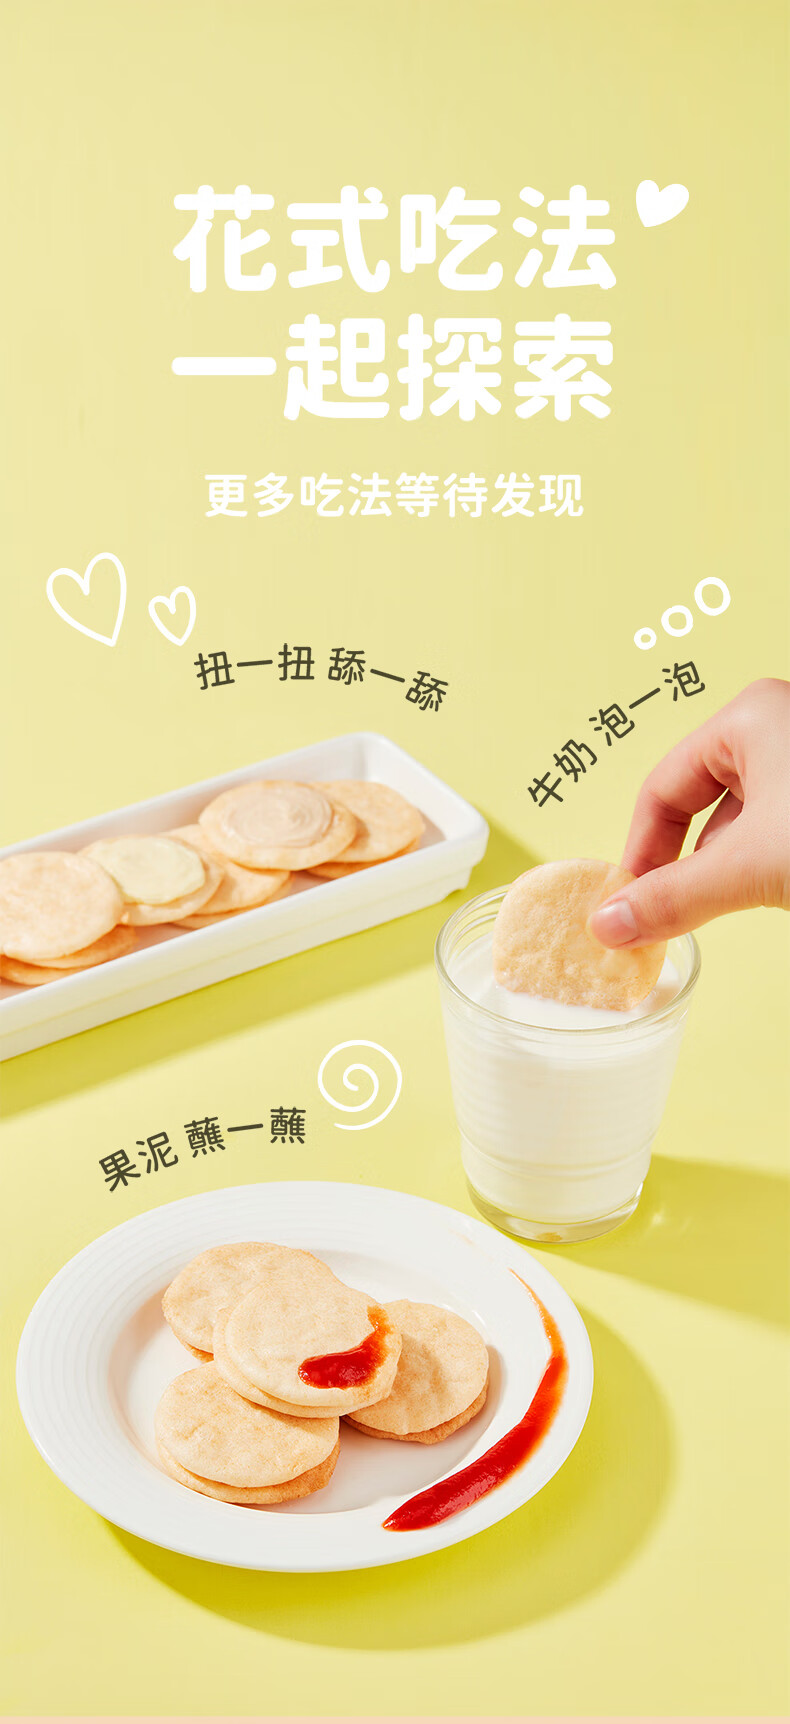 碧欧奇 (BioVillage)宝宝零食 夹心米饼  乳酪味+蜜桃味40g*2盒